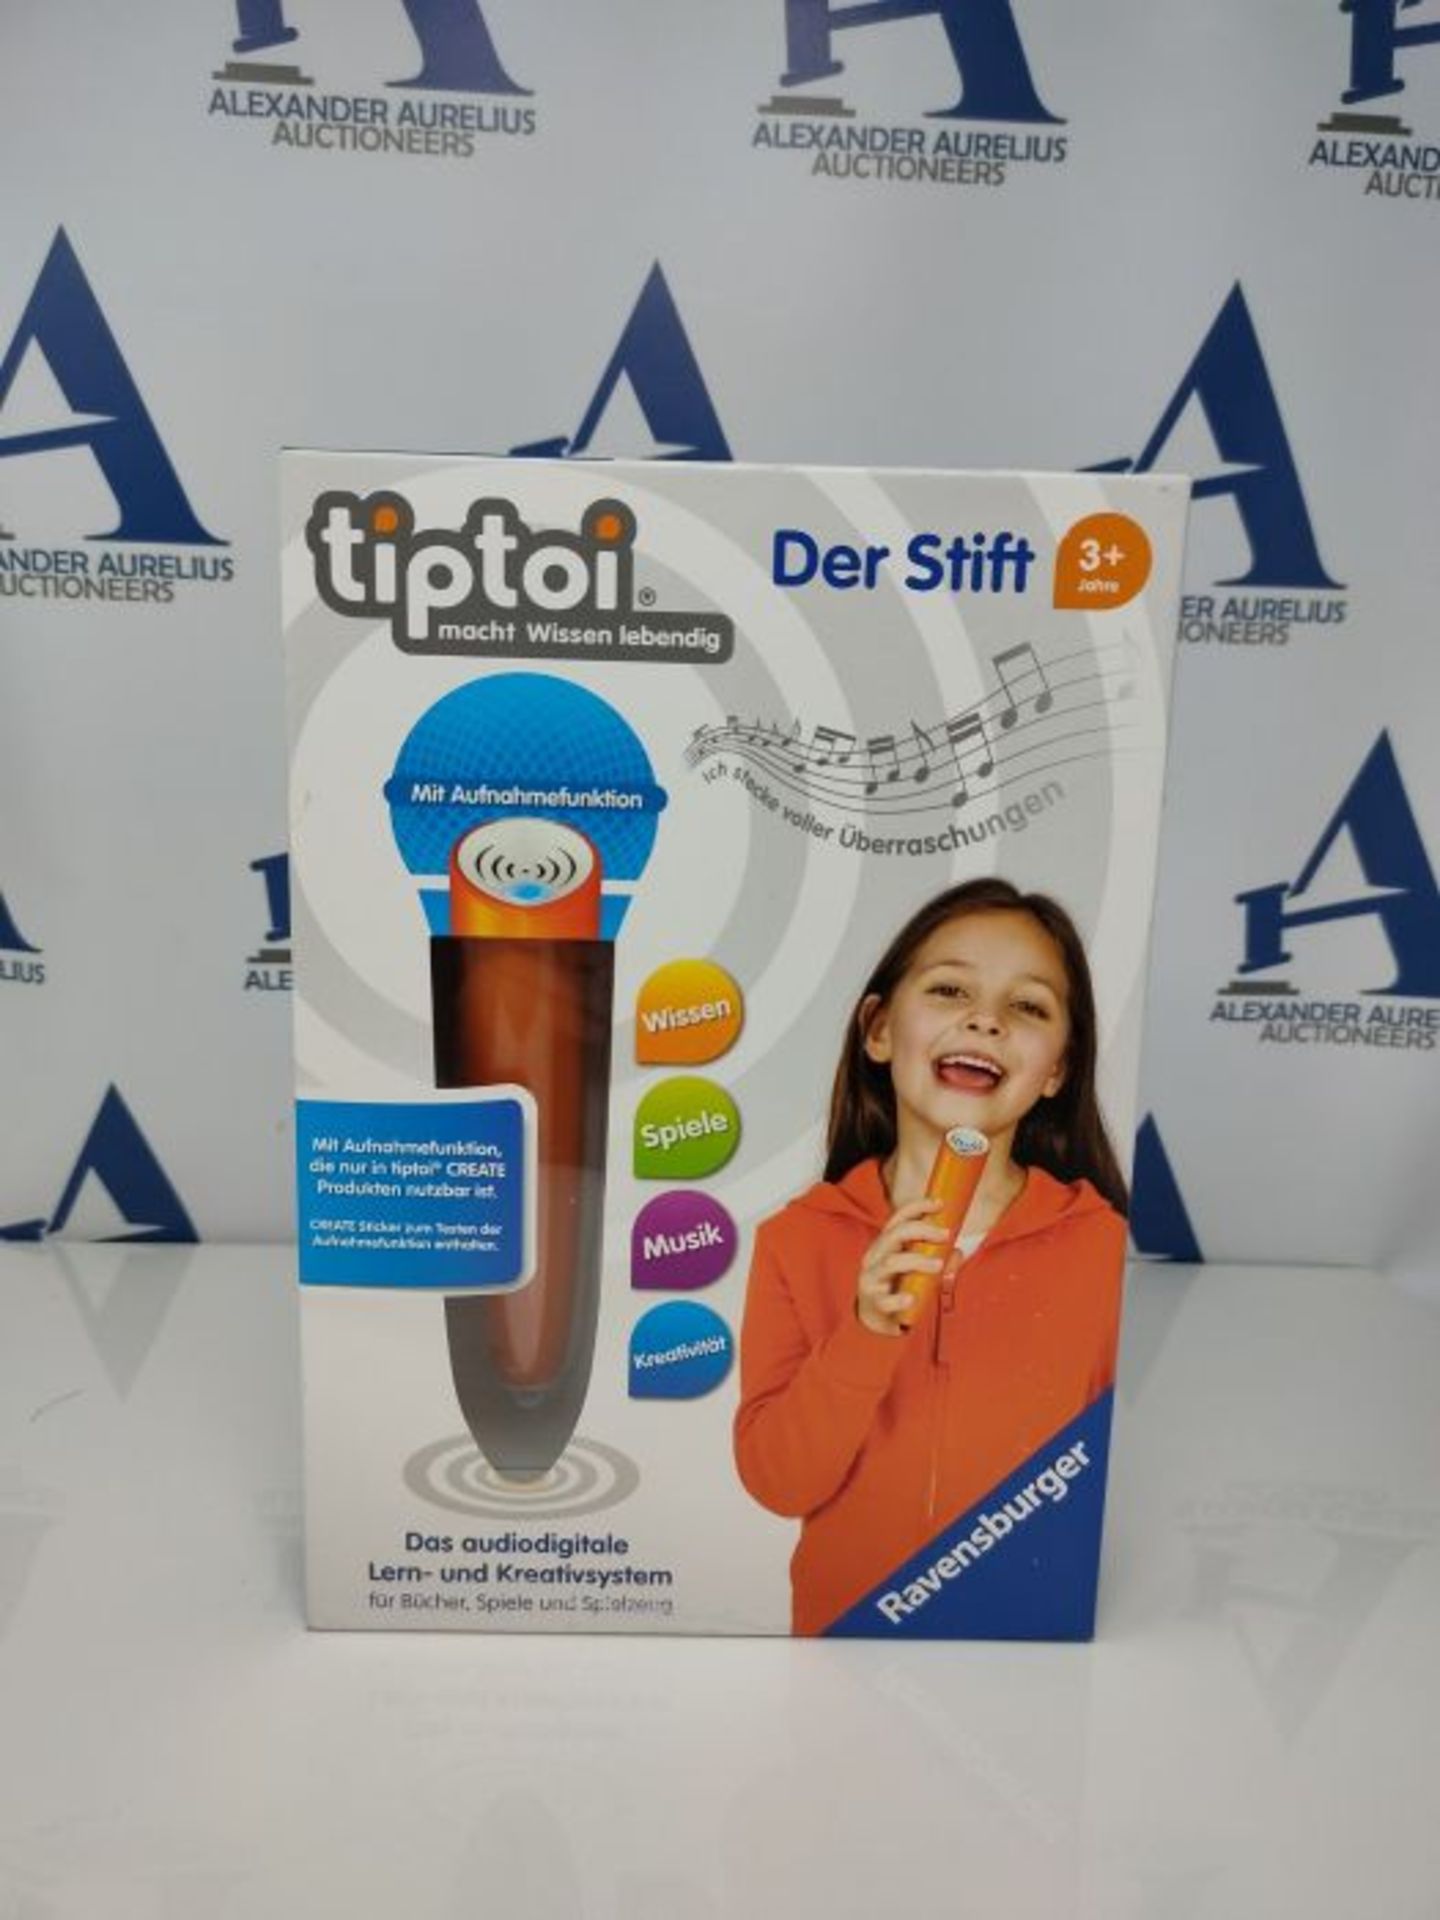 tiptoi® Der Stift: das audiodigitale Lern- und Kreativsystem - Image 2 of 3